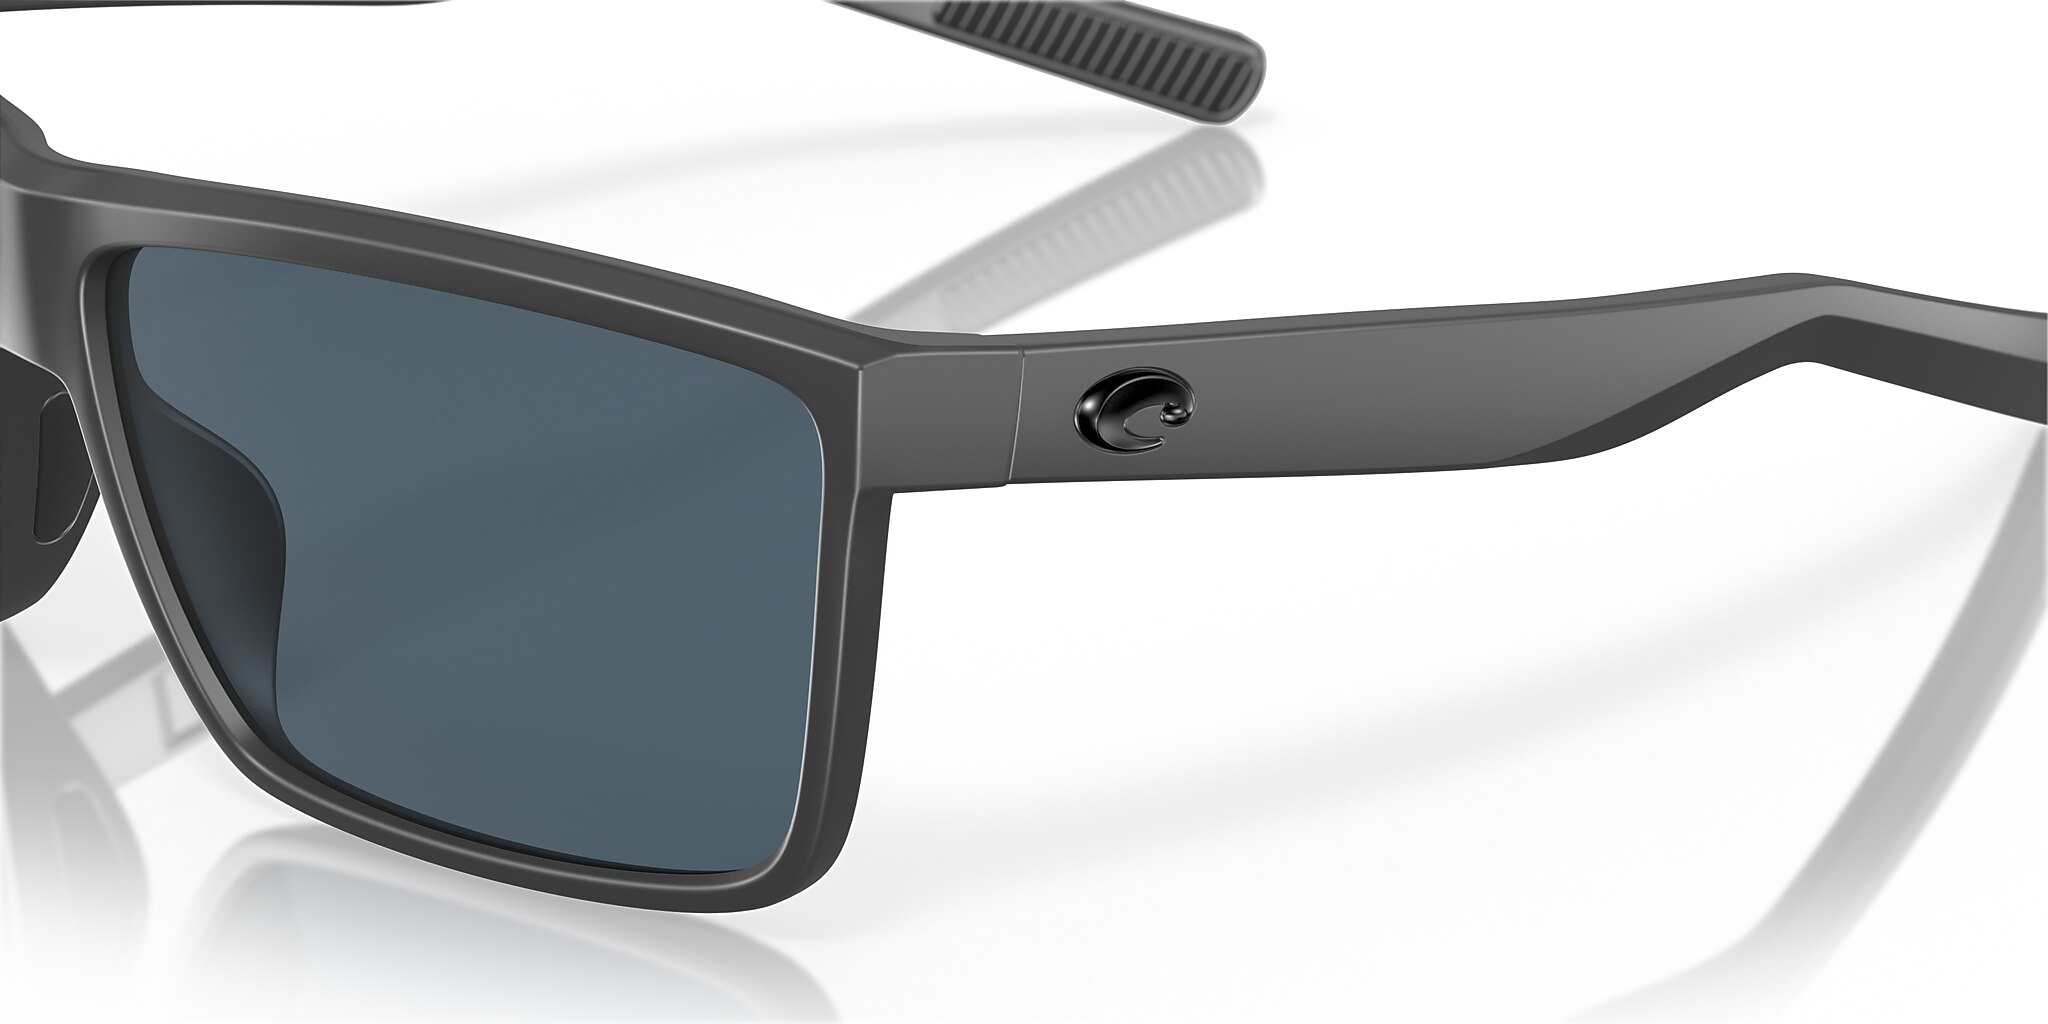 Rinconcito Polarized Sunglasses in Gray | Costa Del Mar®